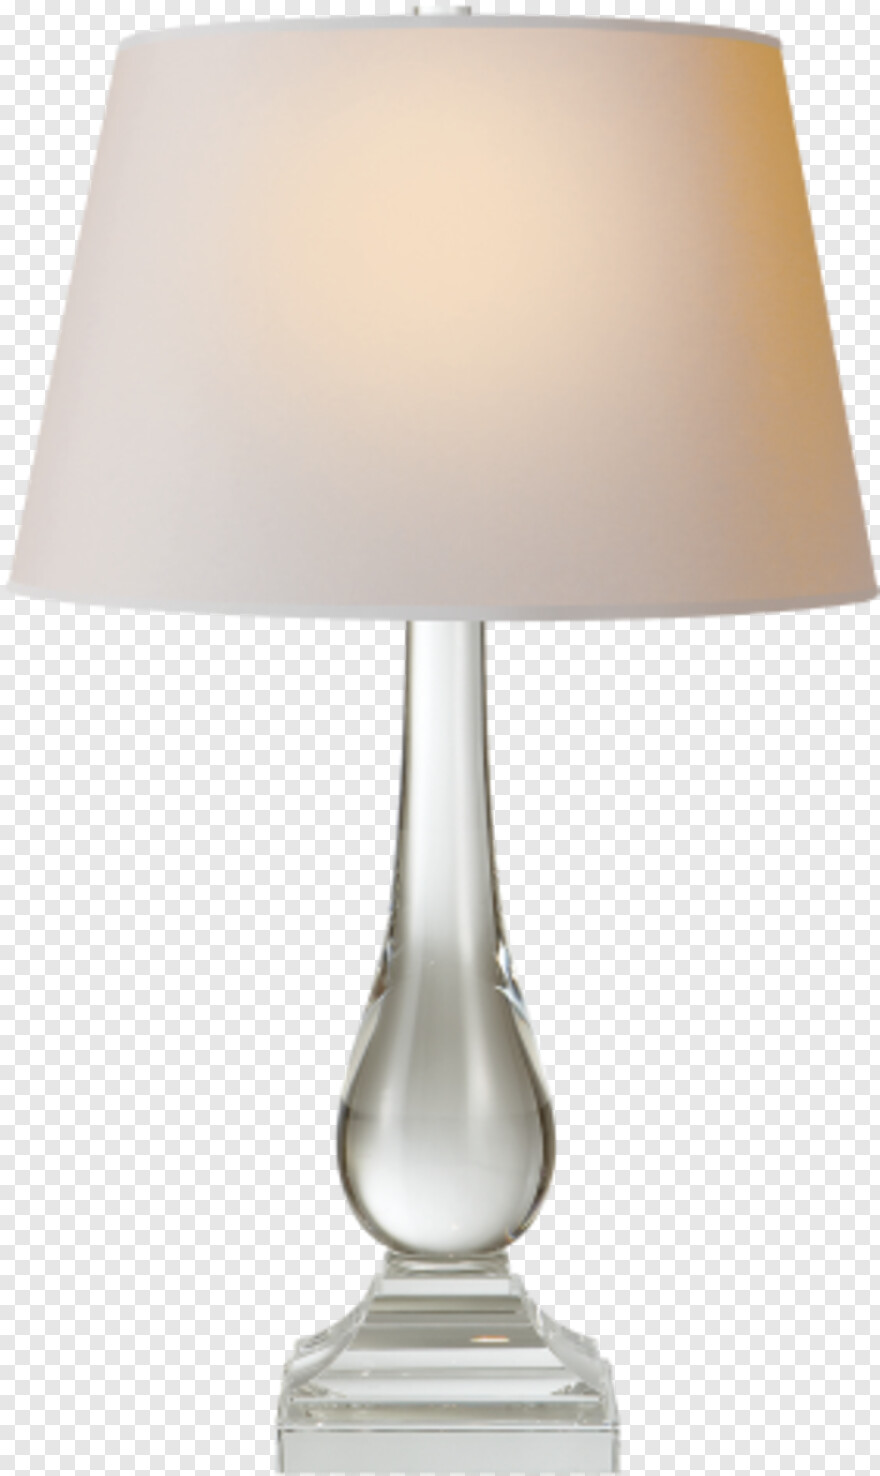 pixar-lamp # 978340